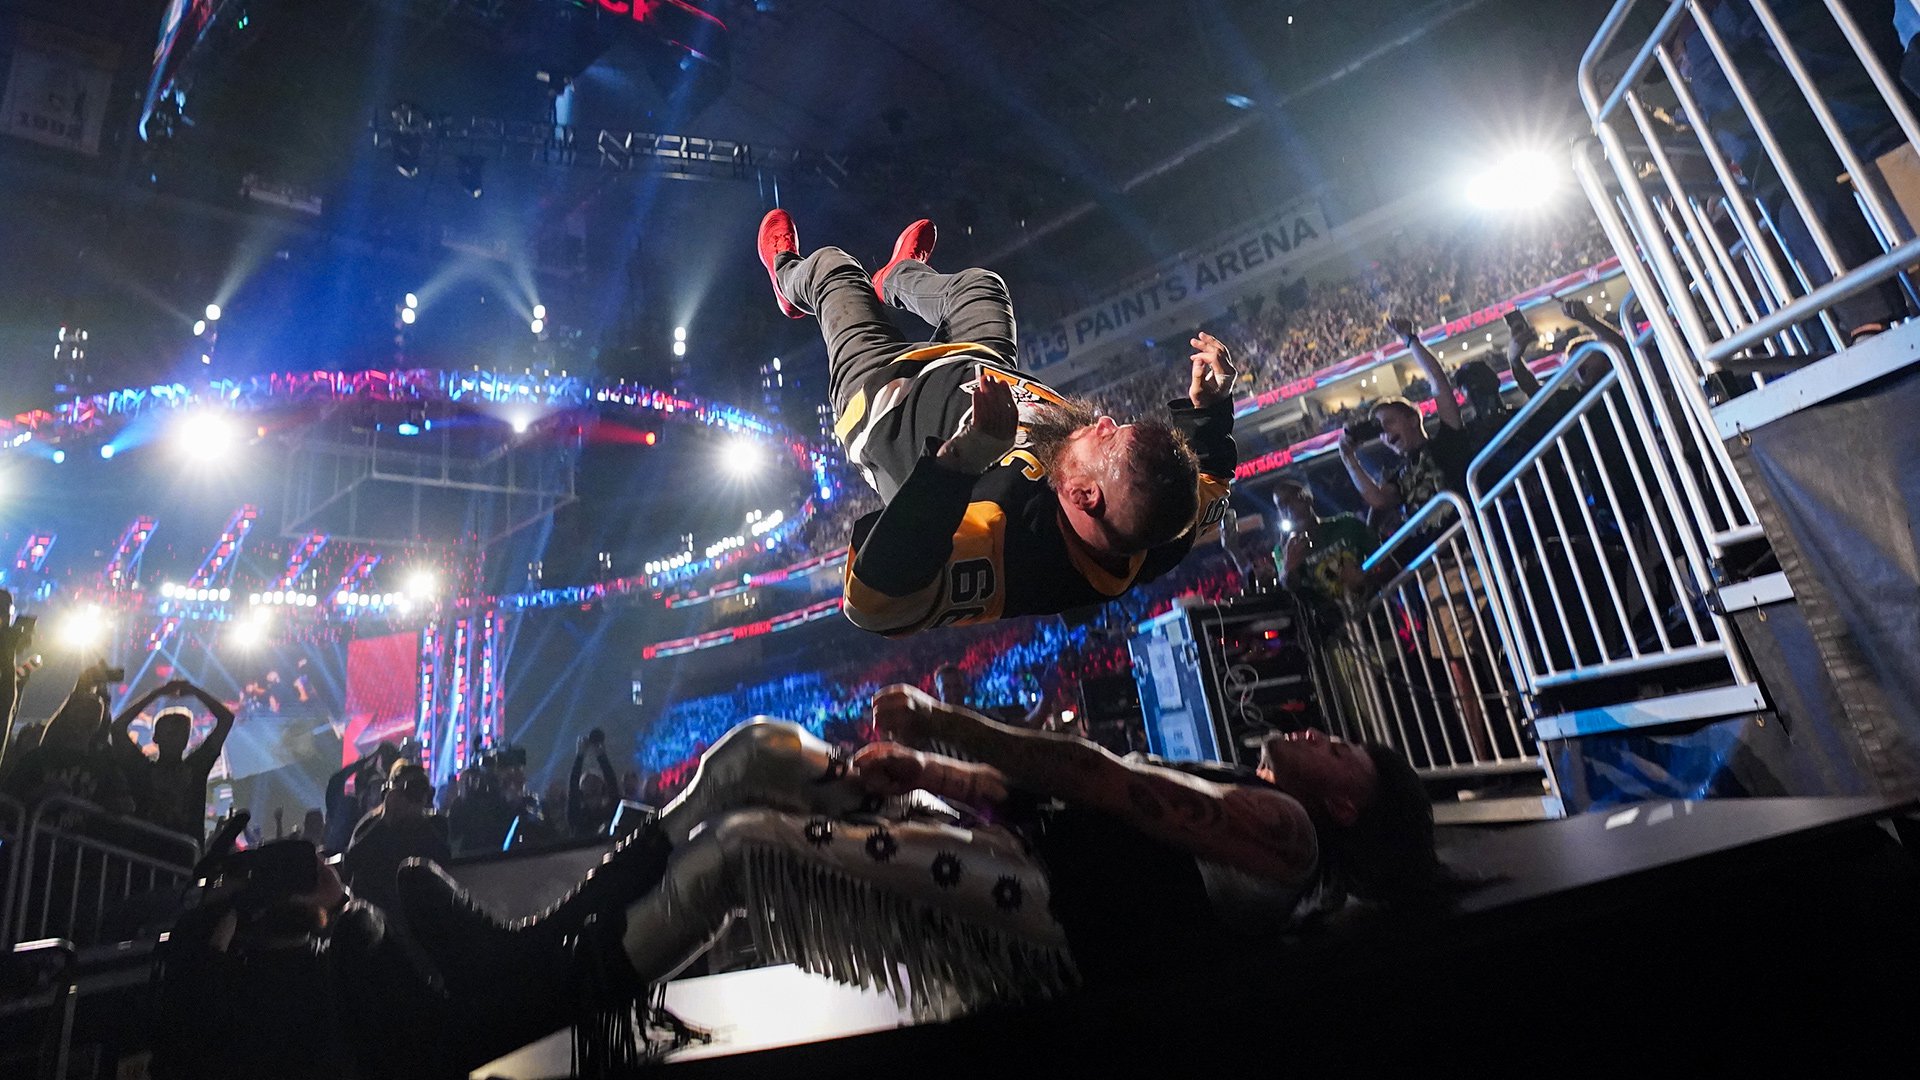 Revelados planos para Kevin Owens descartados no WWE Raw